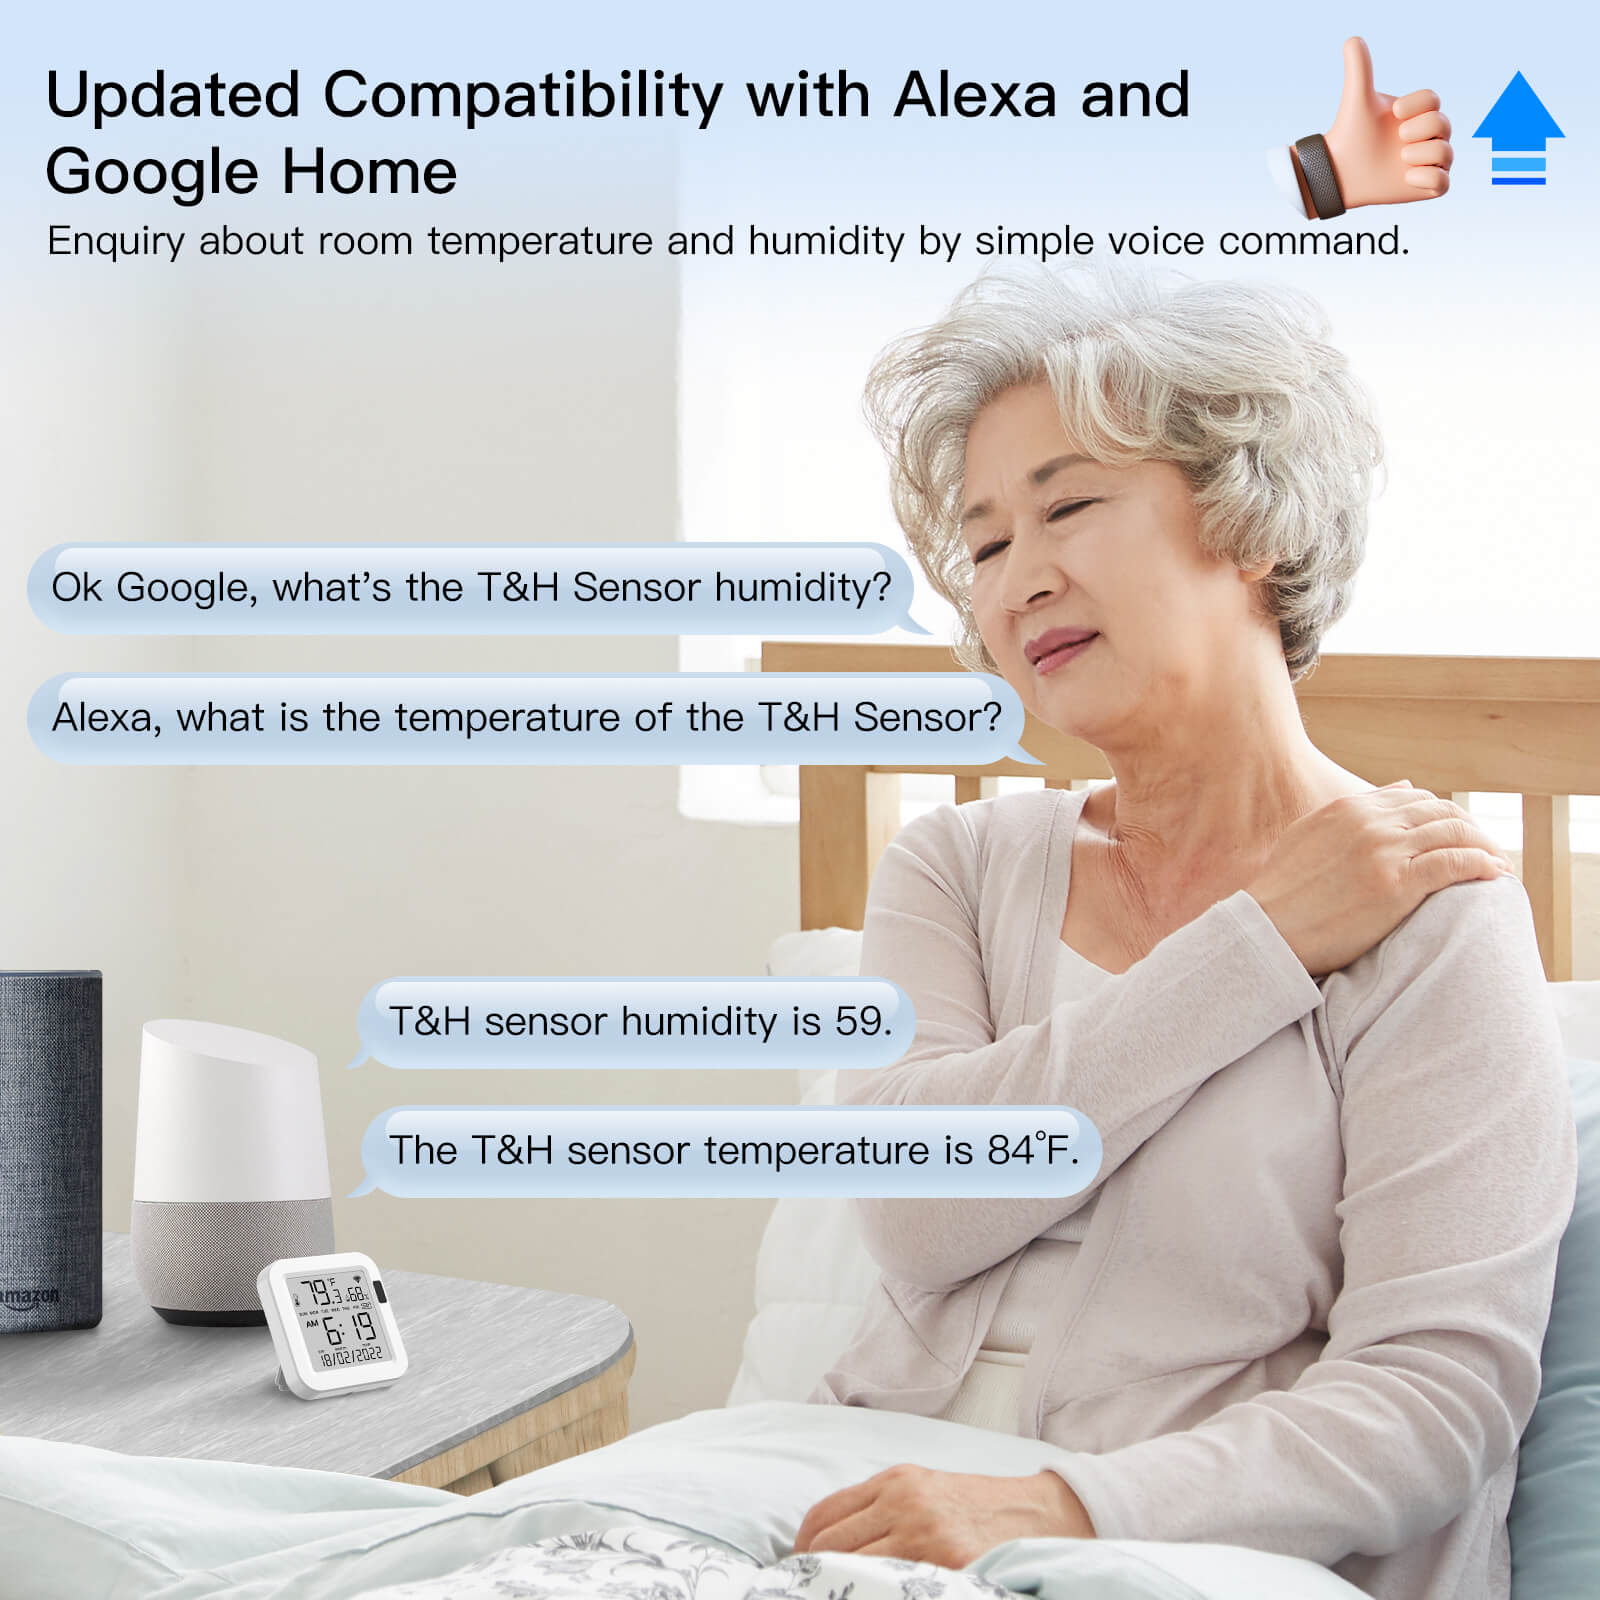 Bombillo Inteligente Wifi Led Alexa Google Home Multicolor - U$S 7,99